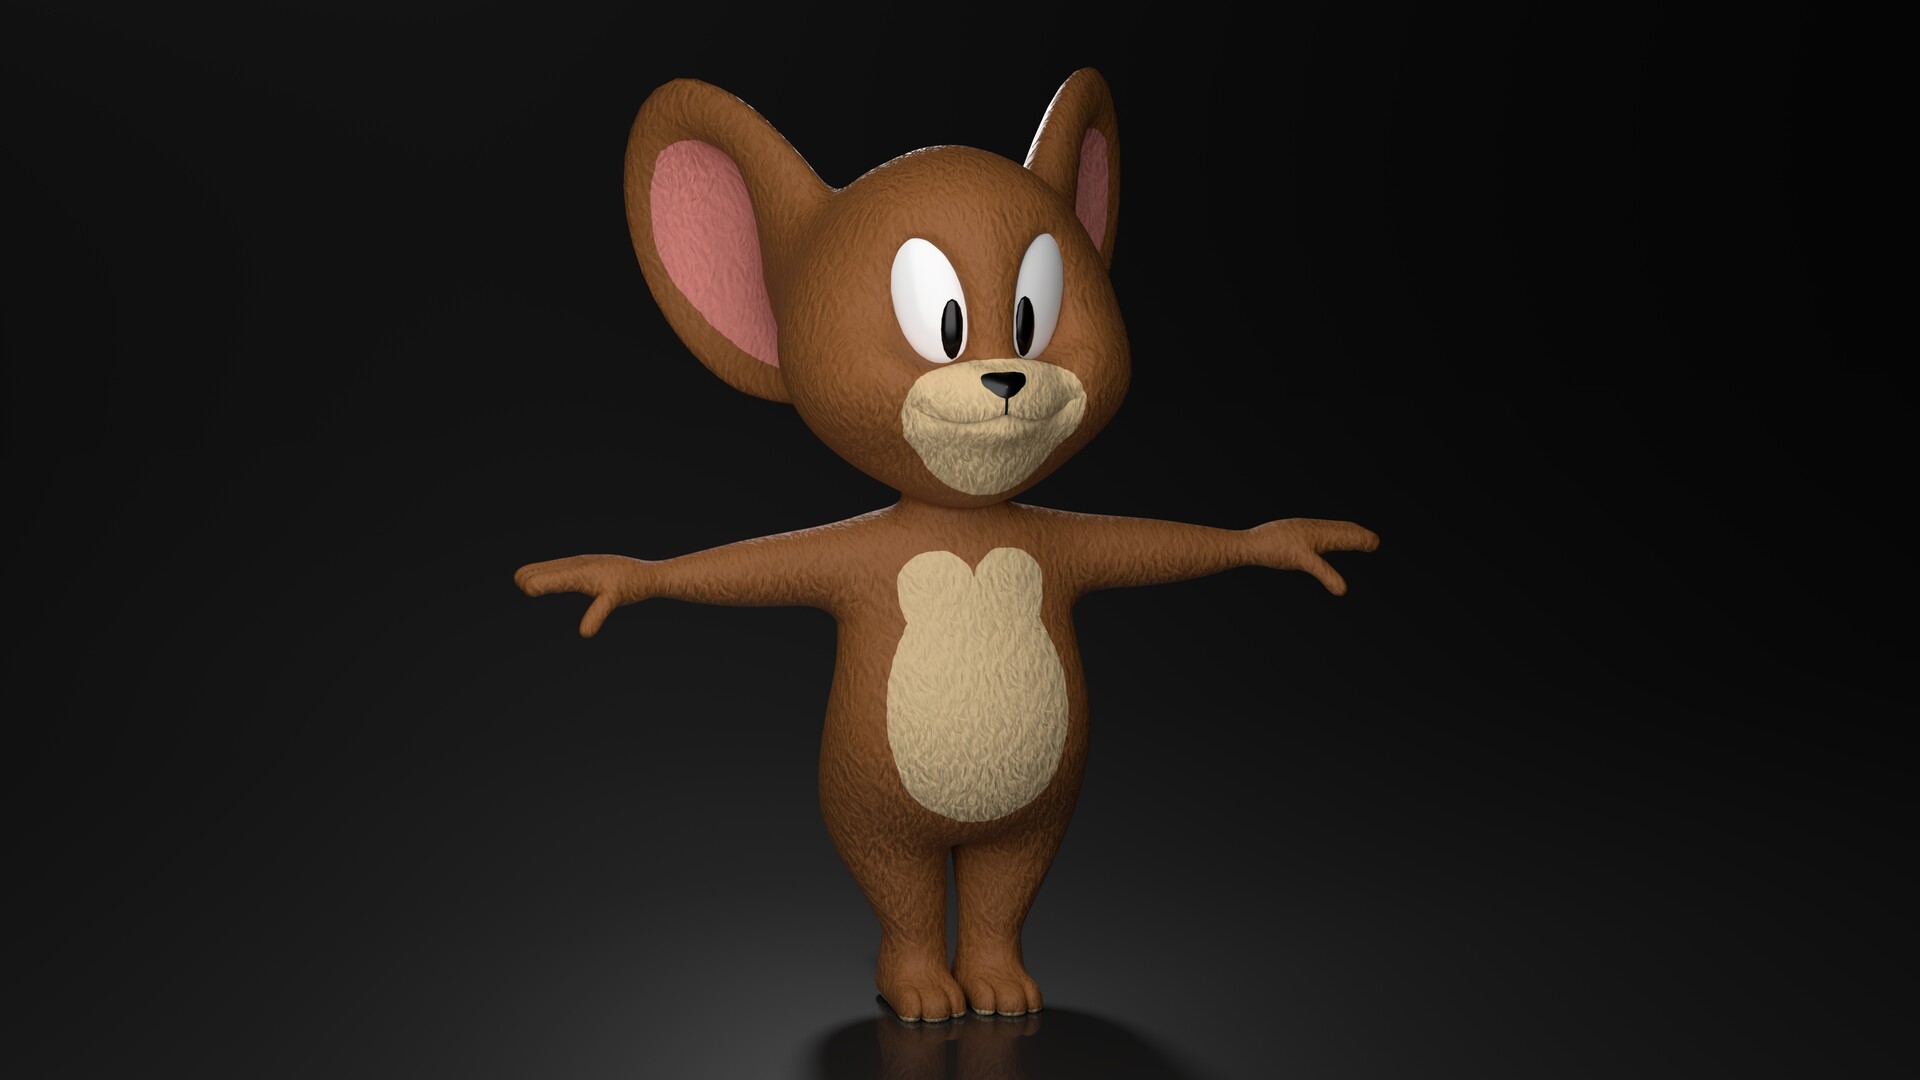 ArtStation - Jerry Cartoon Character